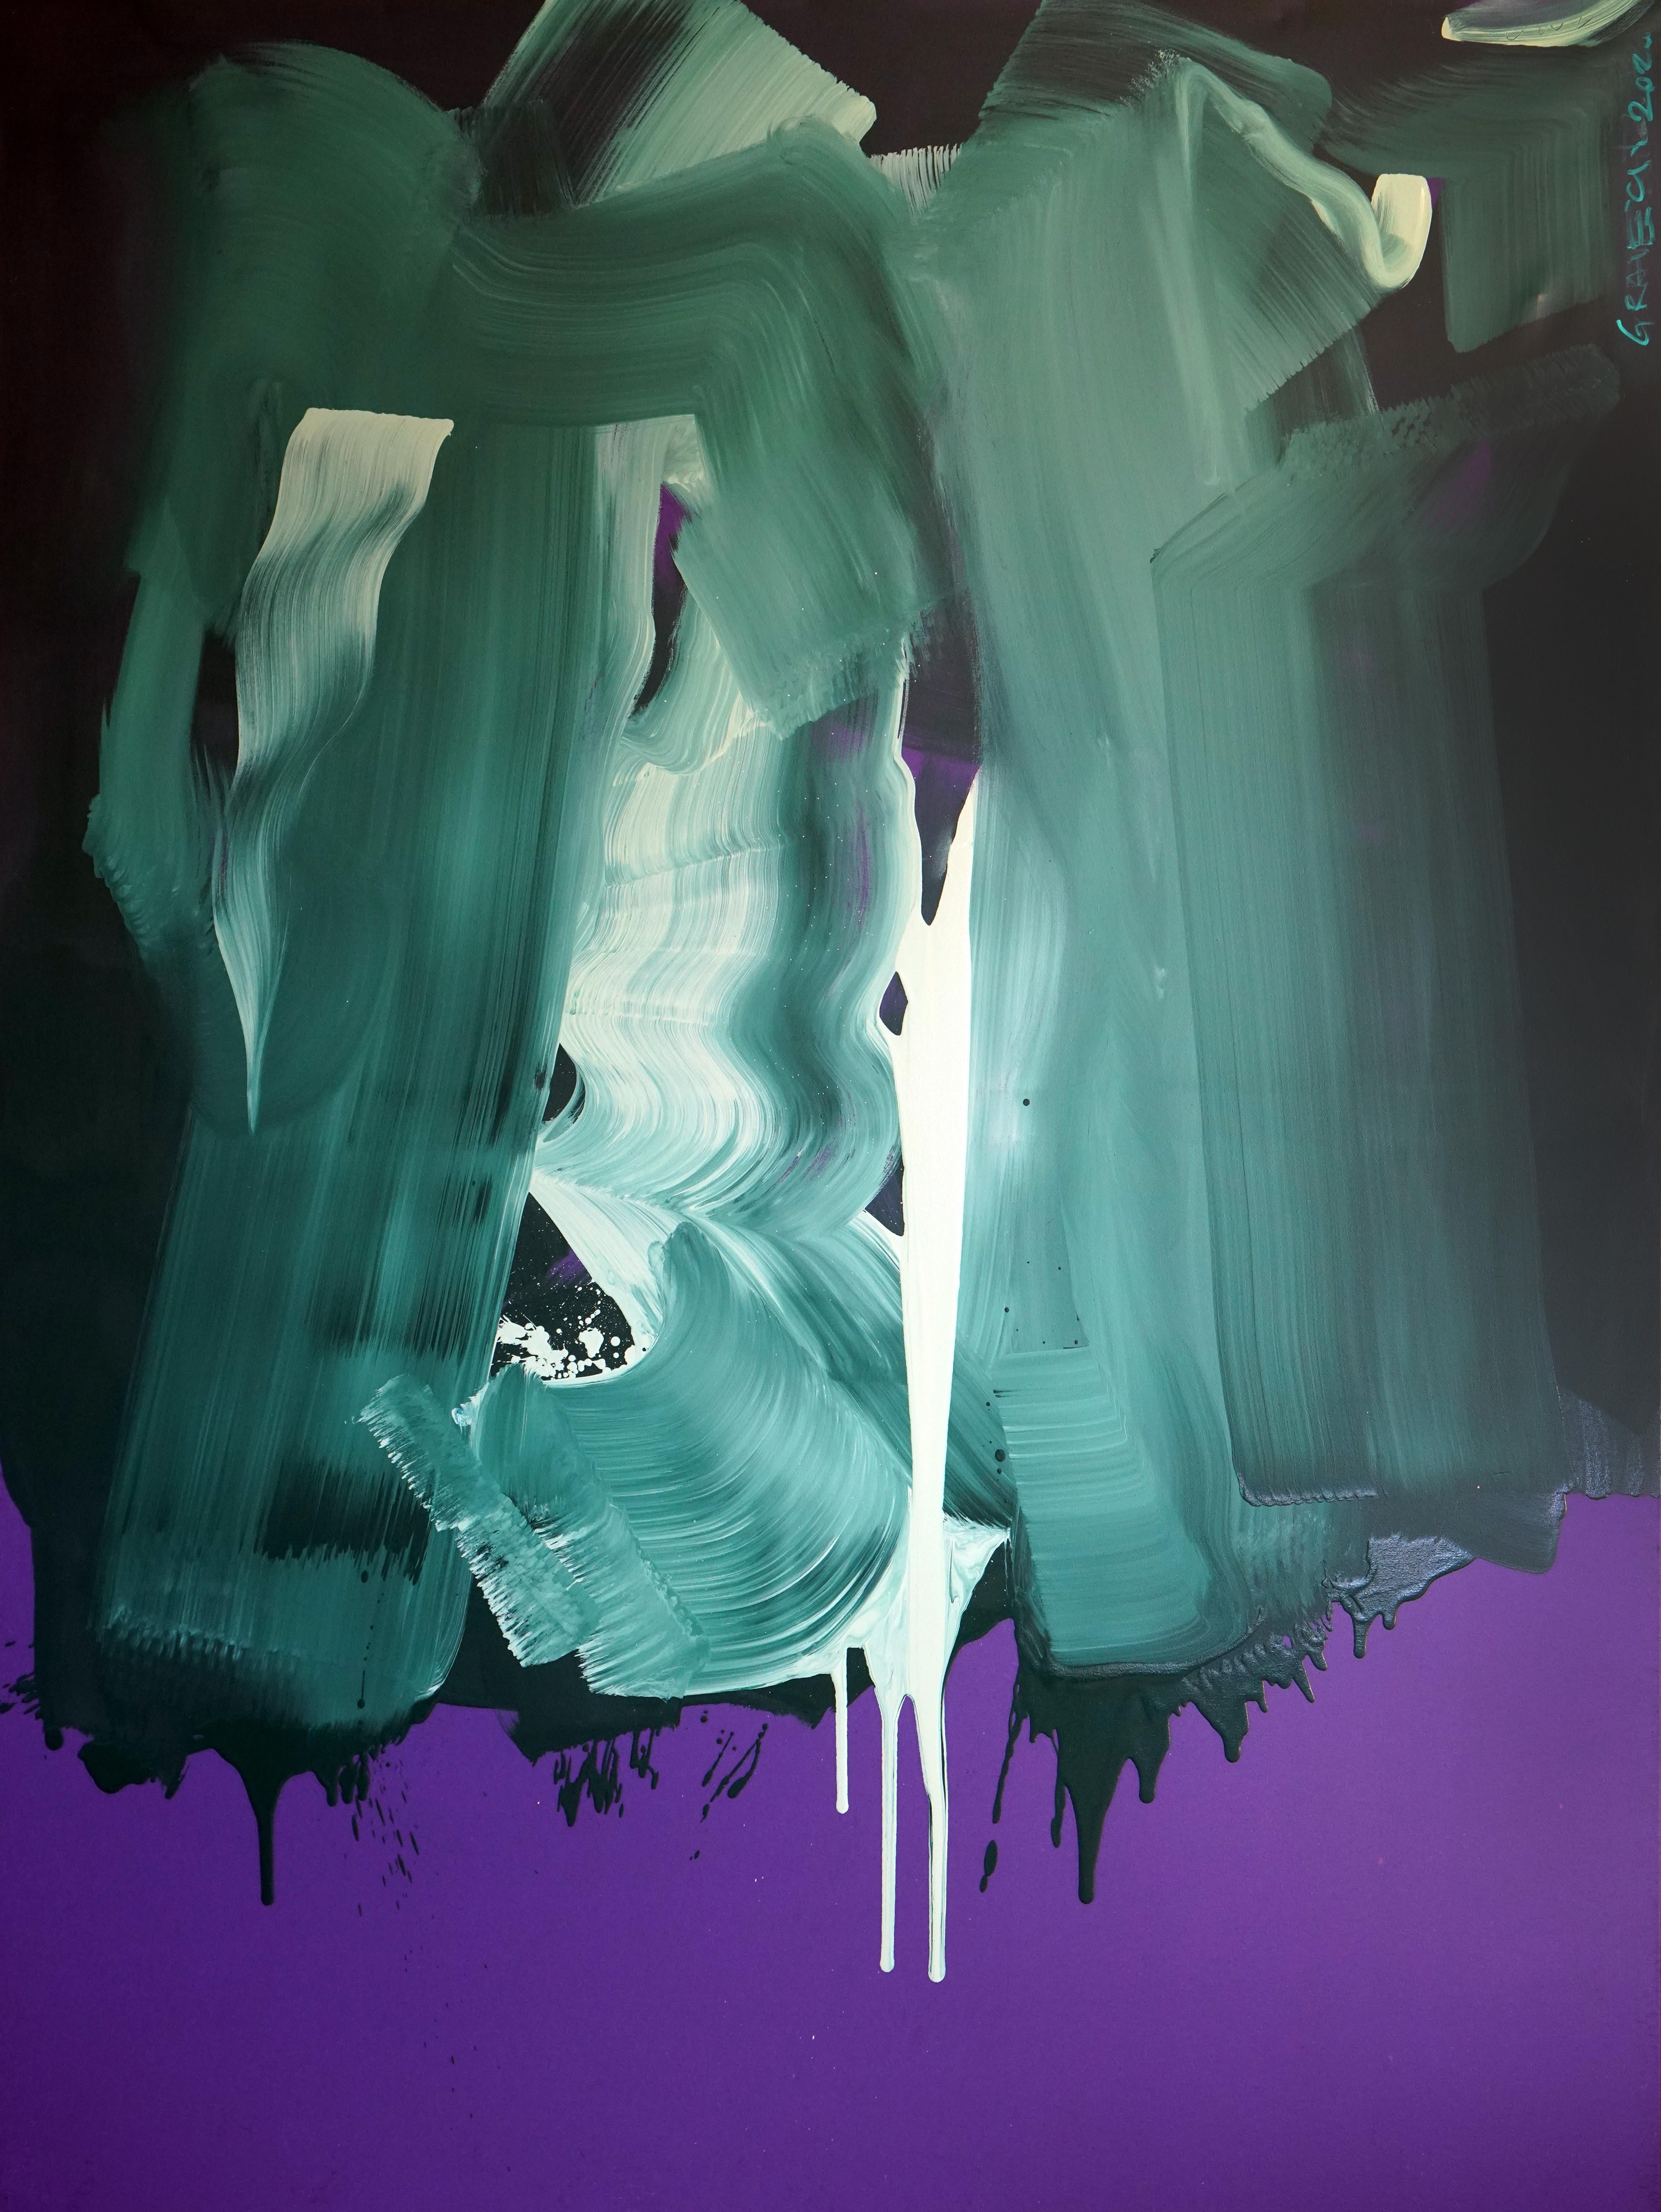 Abstract Painting Grzegorz Radecki - On The Violet - Série de blouses - Expression colorée, format XL, peinture à l'huile